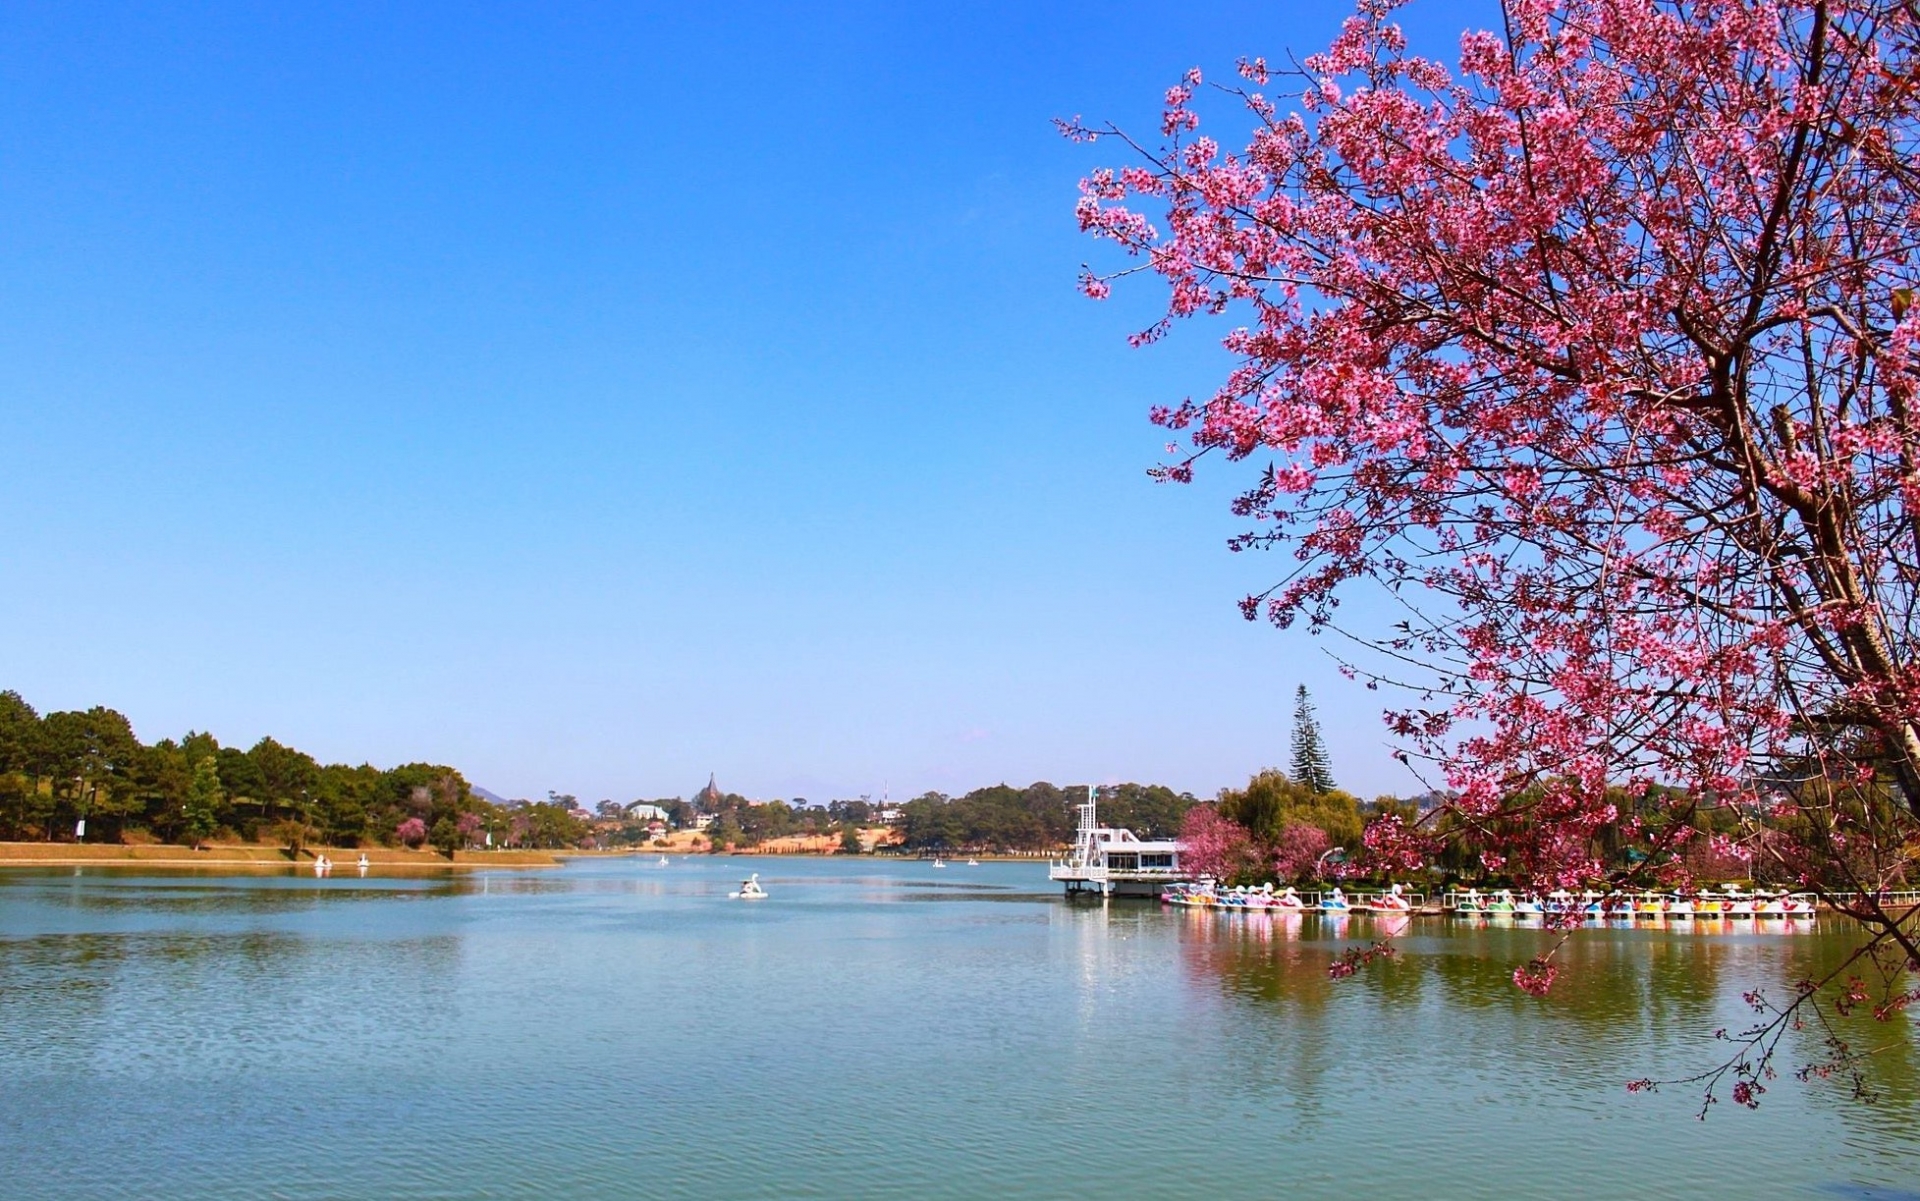 Ven hồ Xuân Hương trồng khá nhiều hoa mai anh đào.